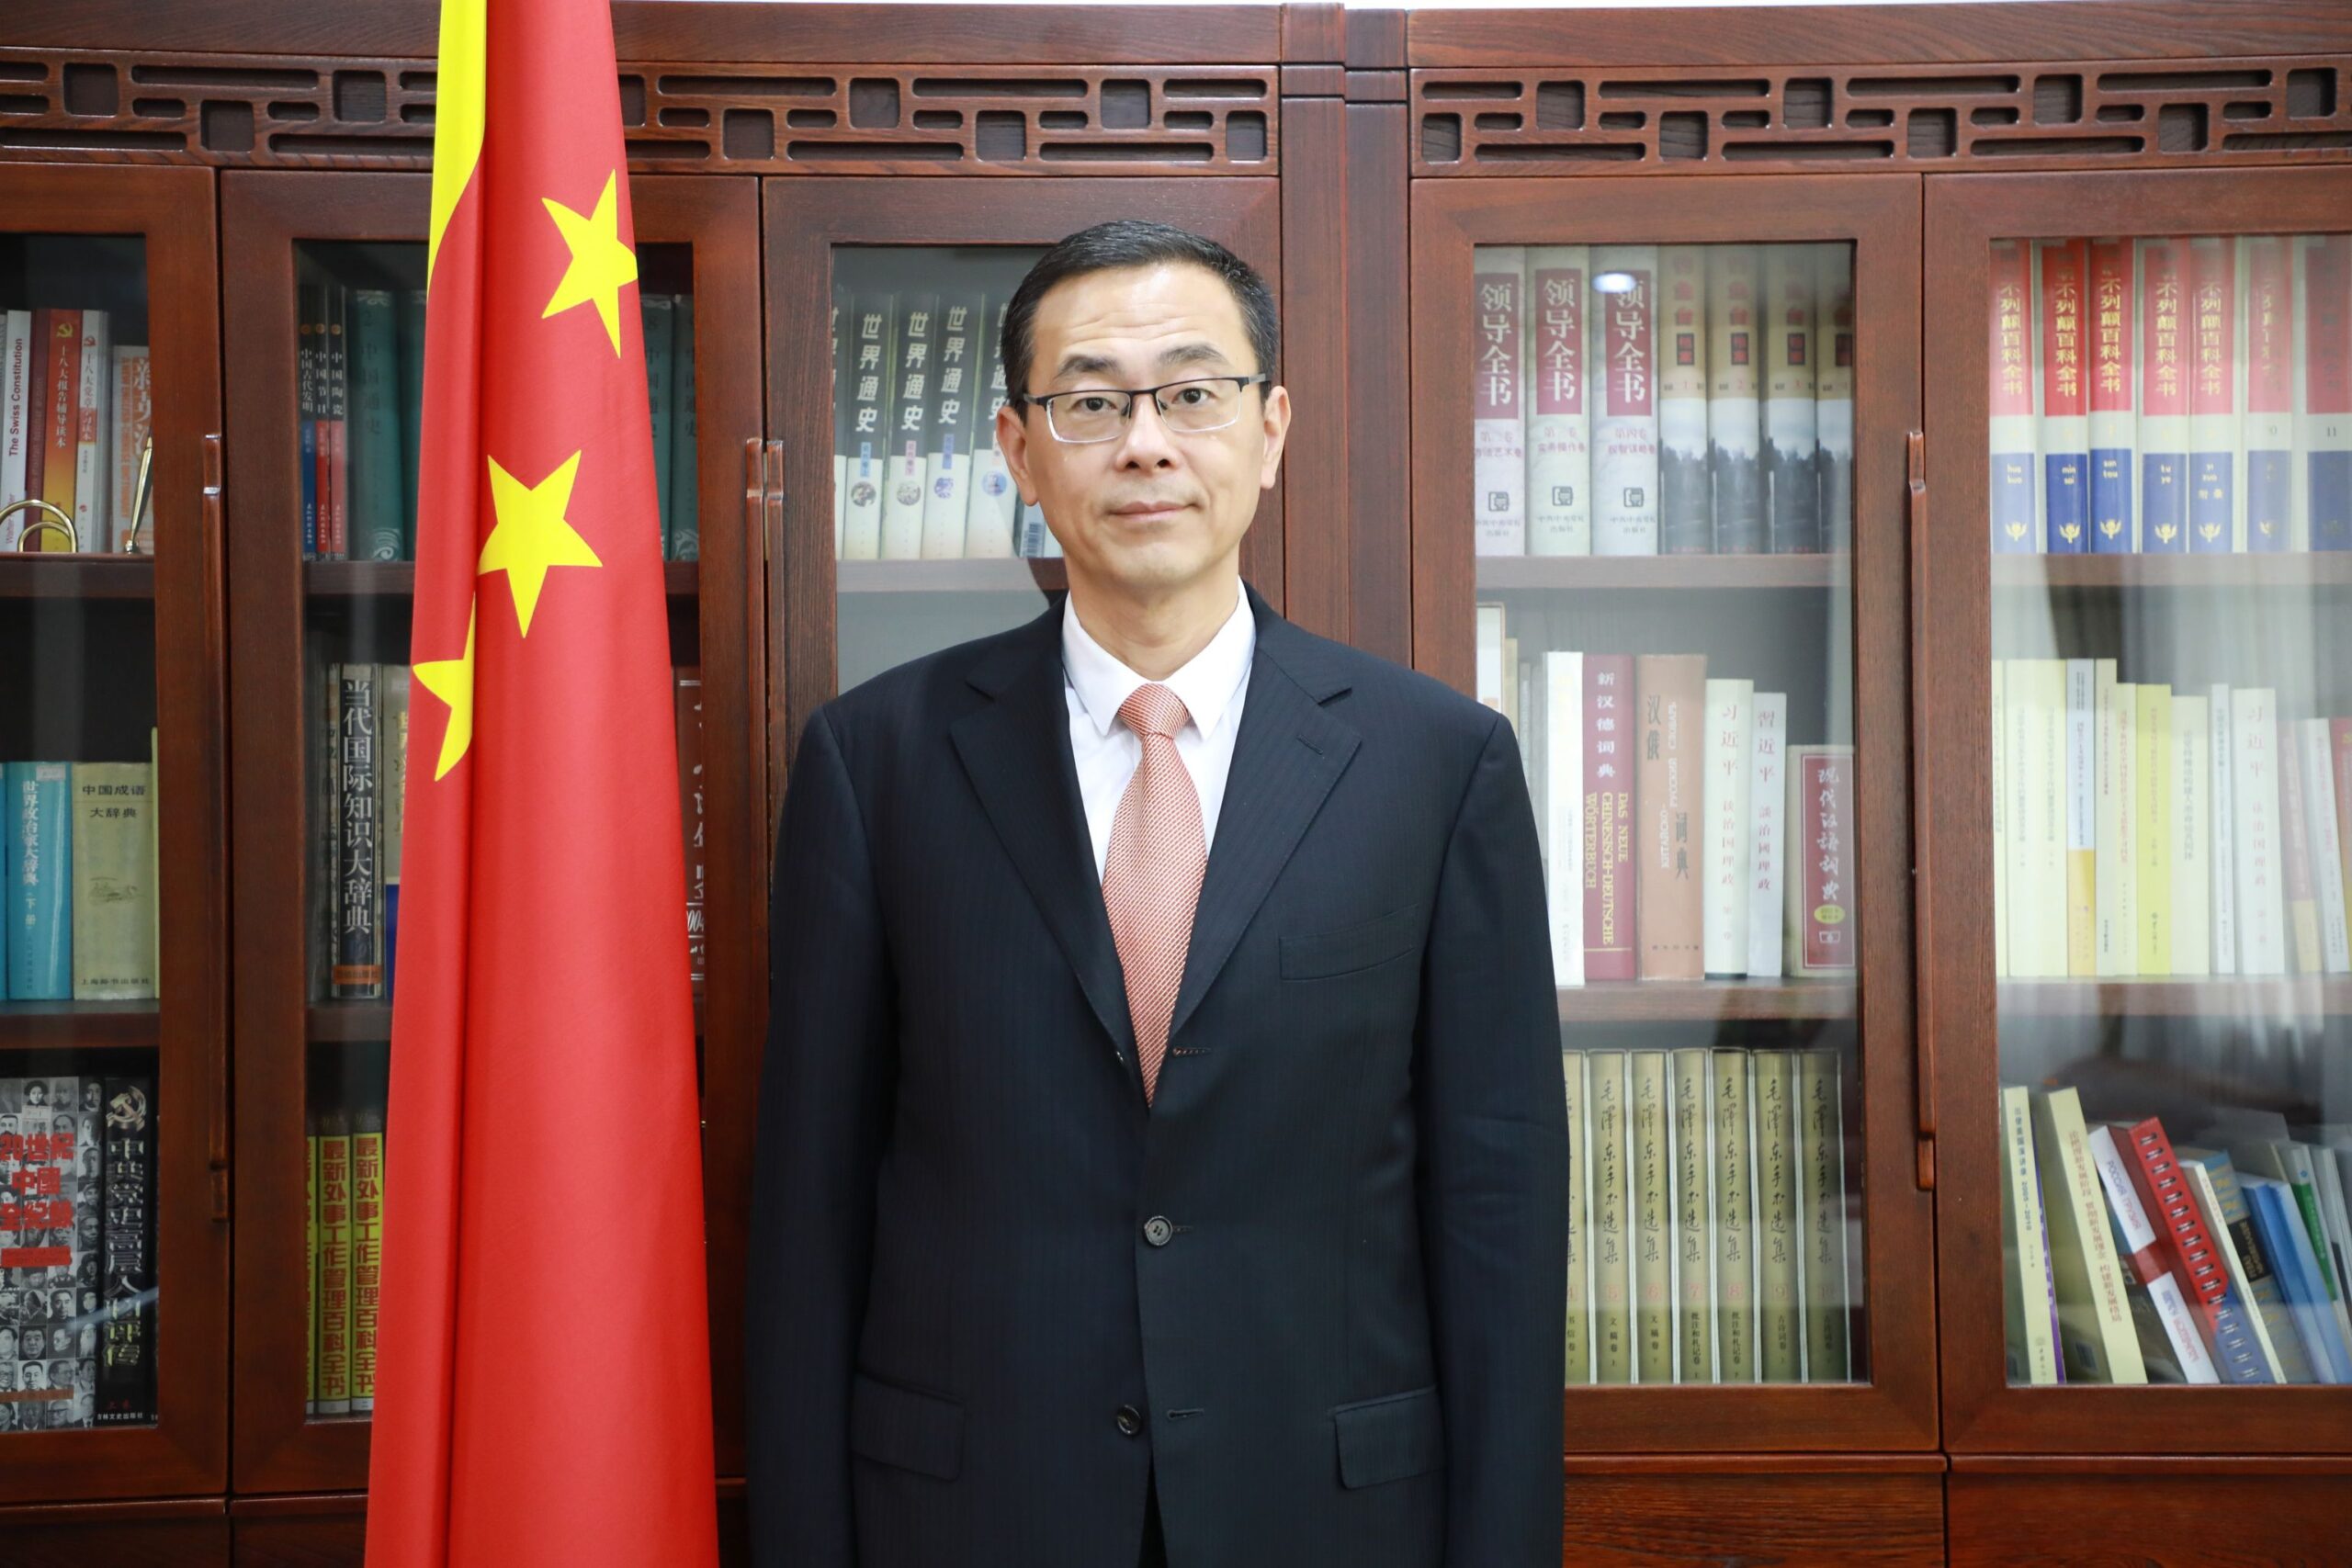 სამარყანდის სამიტით რეგიონული თანამშრომლობის  ახალი ეტაპი იწყება –  ჭოუ ციენი-ჩინეთის სახალხო რესპუბლიკის ელჩი საქართველოში